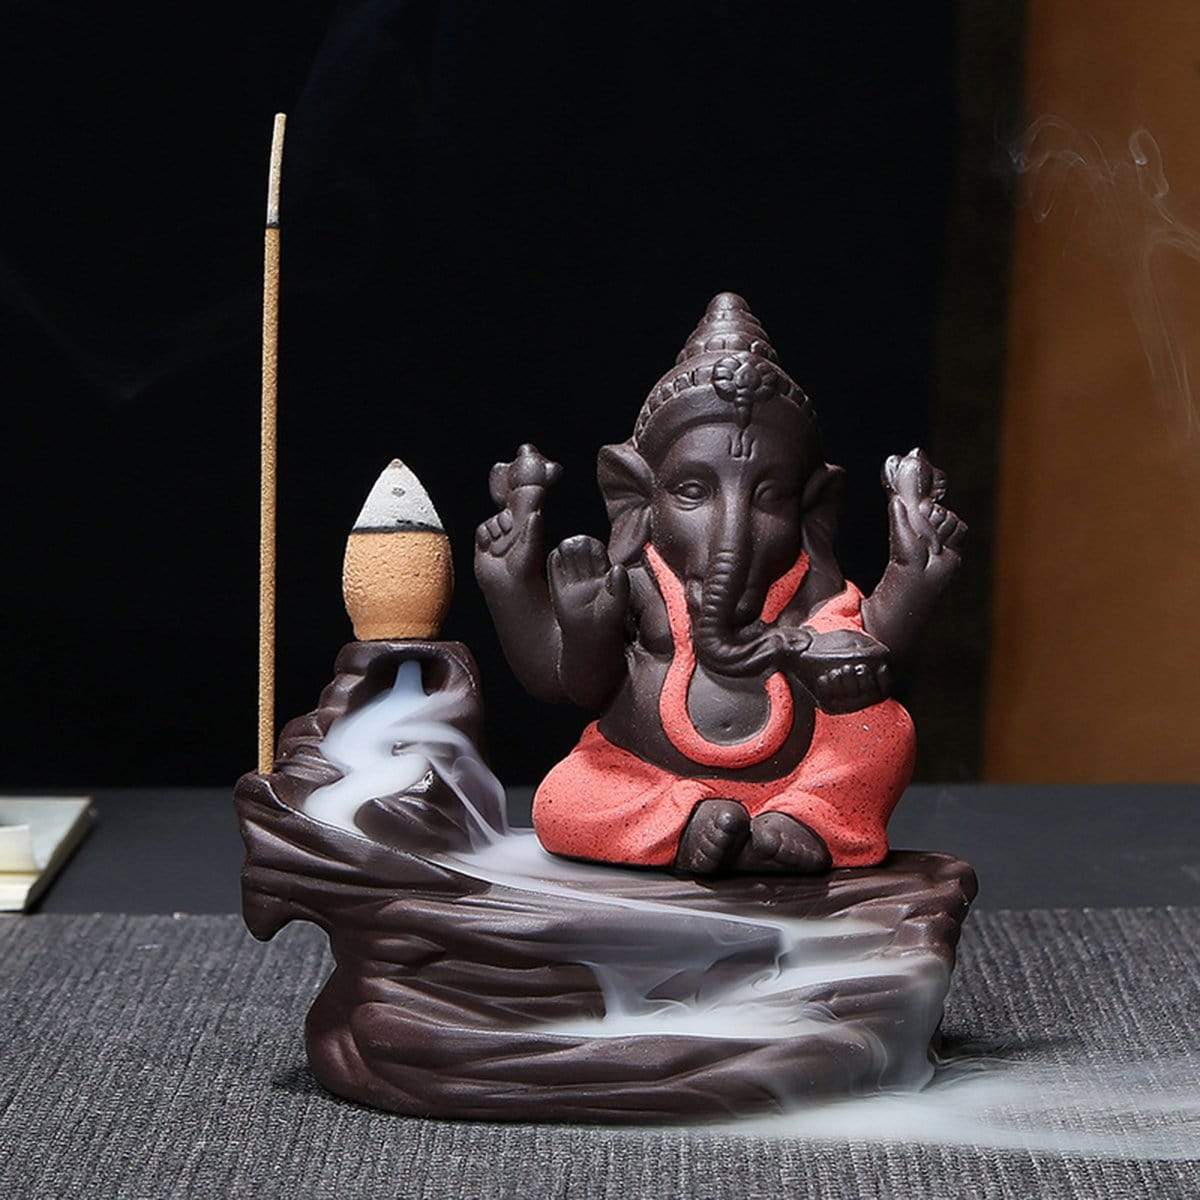 Elephant God Ganesha Meditation Ornaments Decoration Crafts